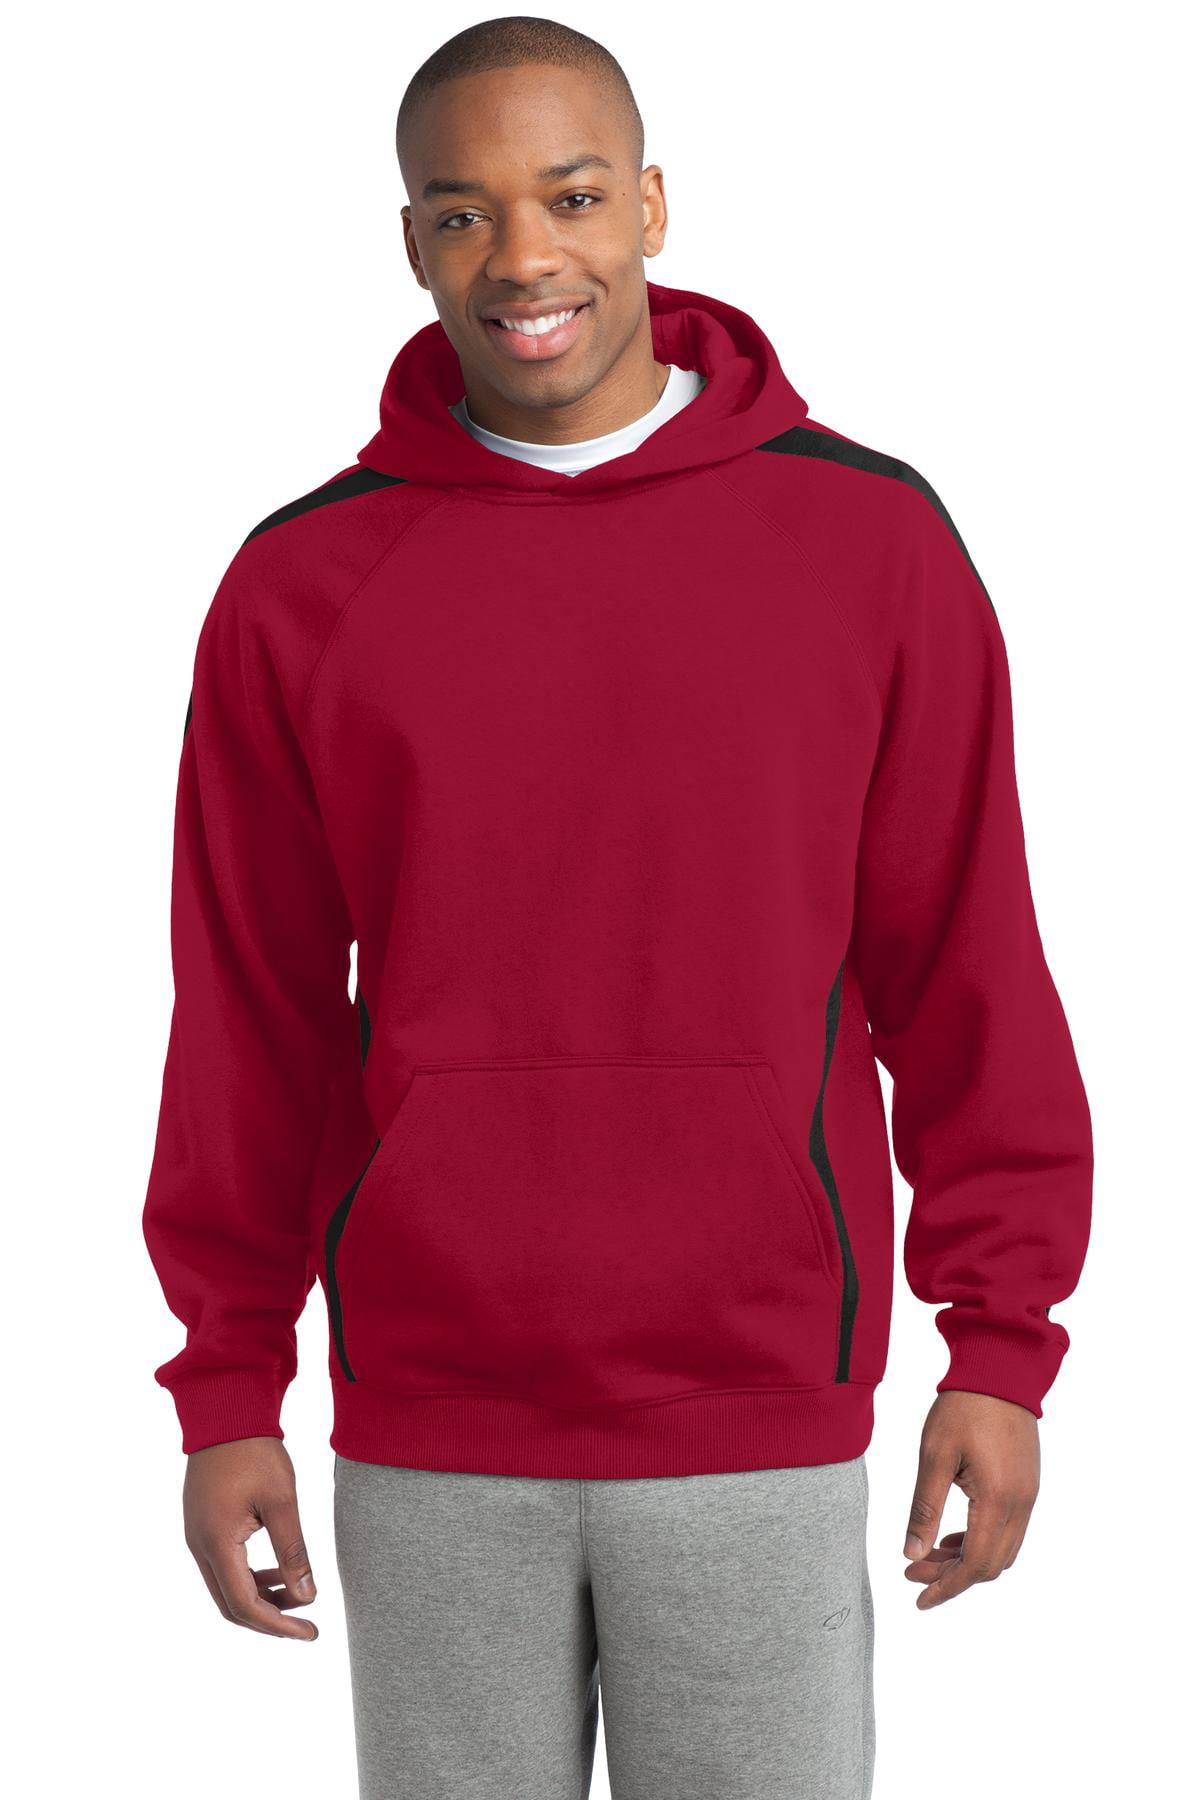 SPORT-TEK Mens Sleeve Stripe Pullover Hooded Sweatshirt 